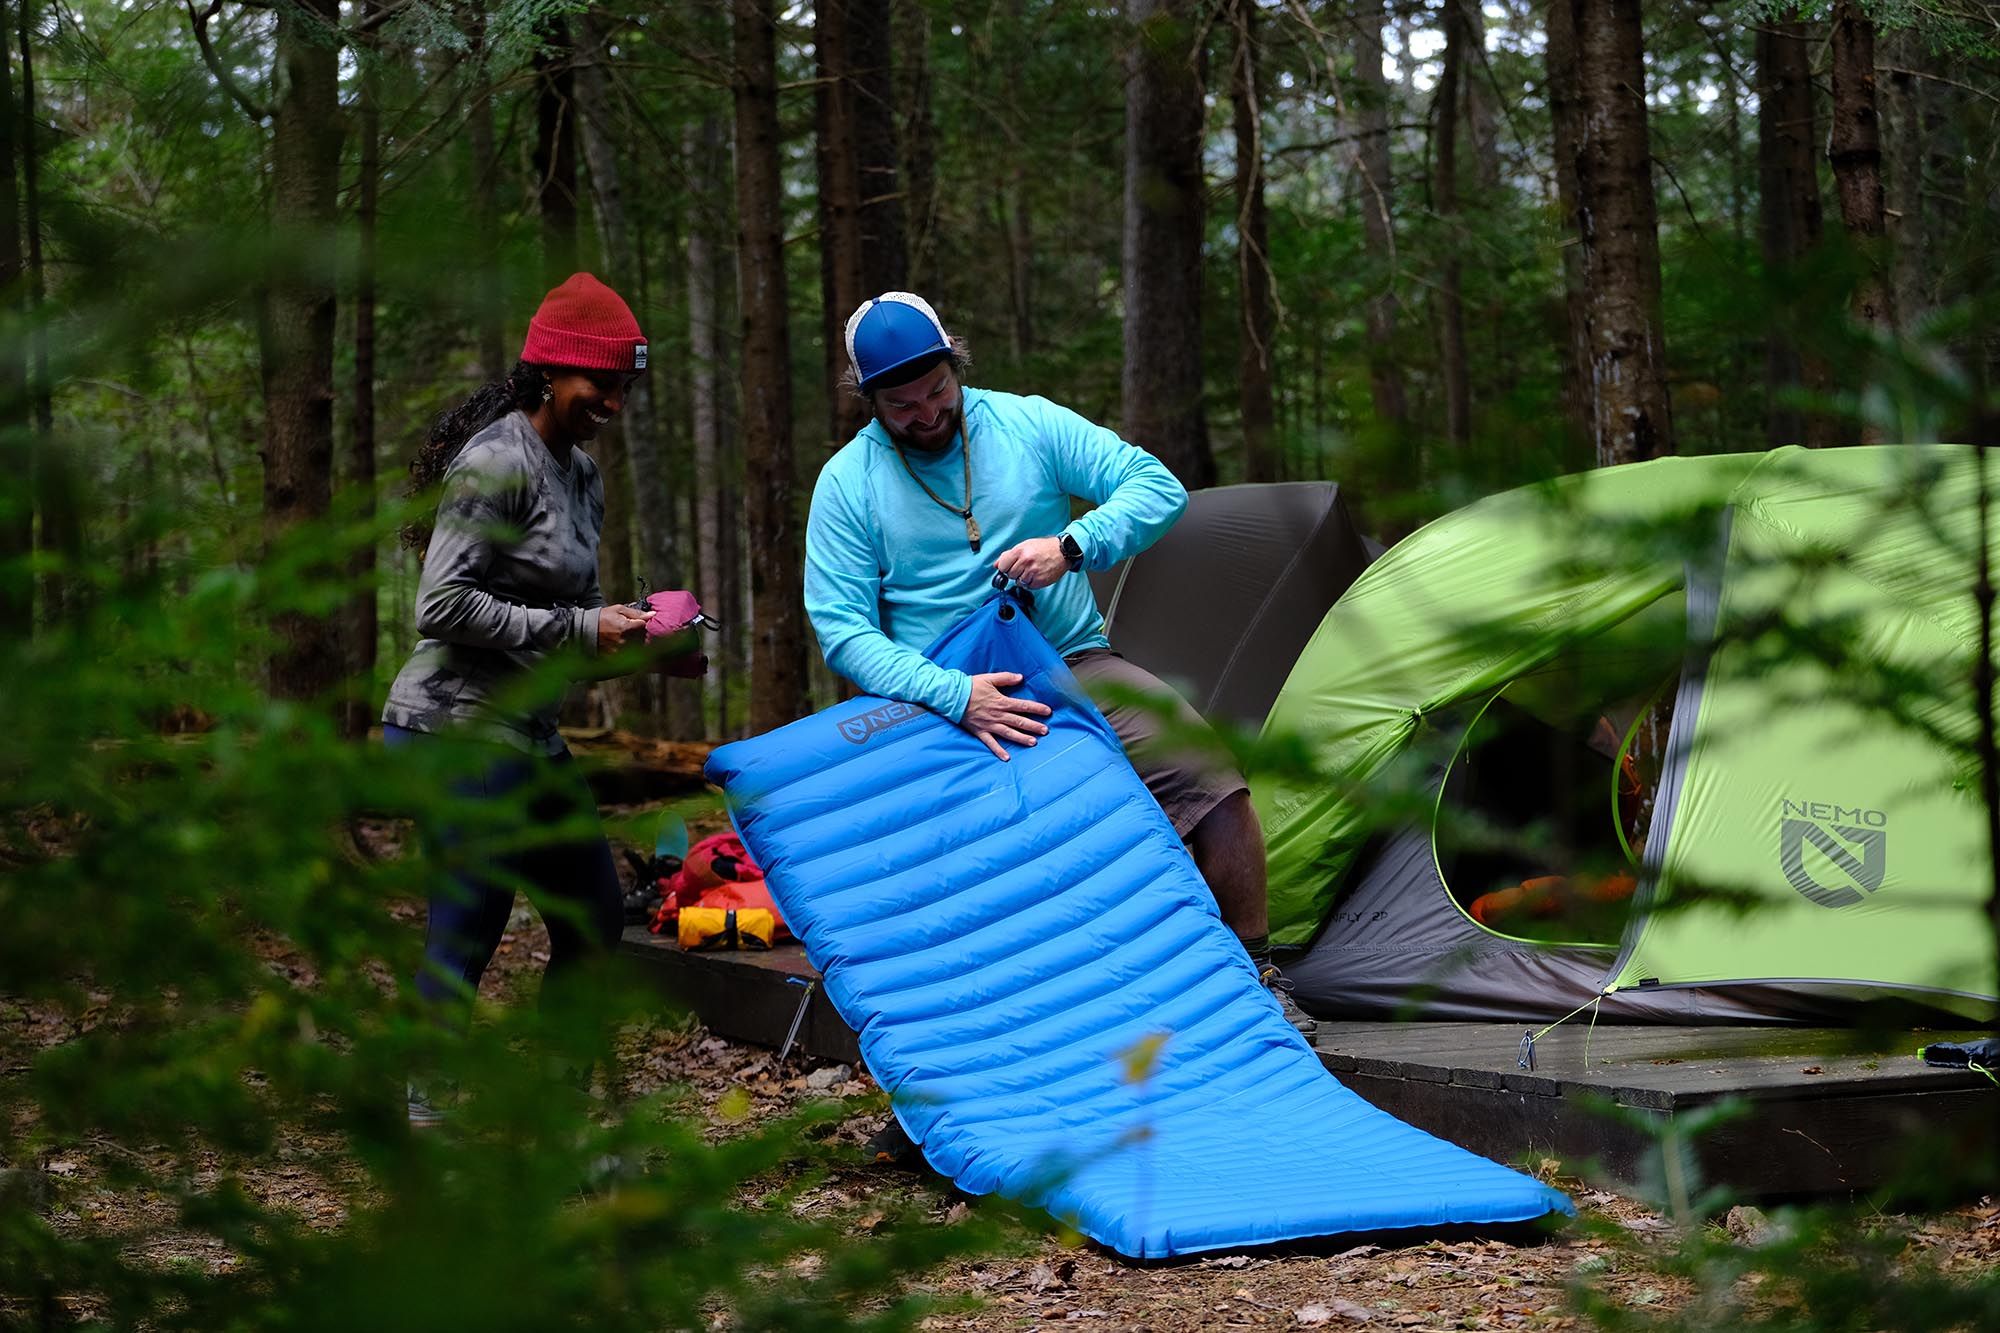 Nemo Quasar 3D regular Inflatable Air sleeping pad